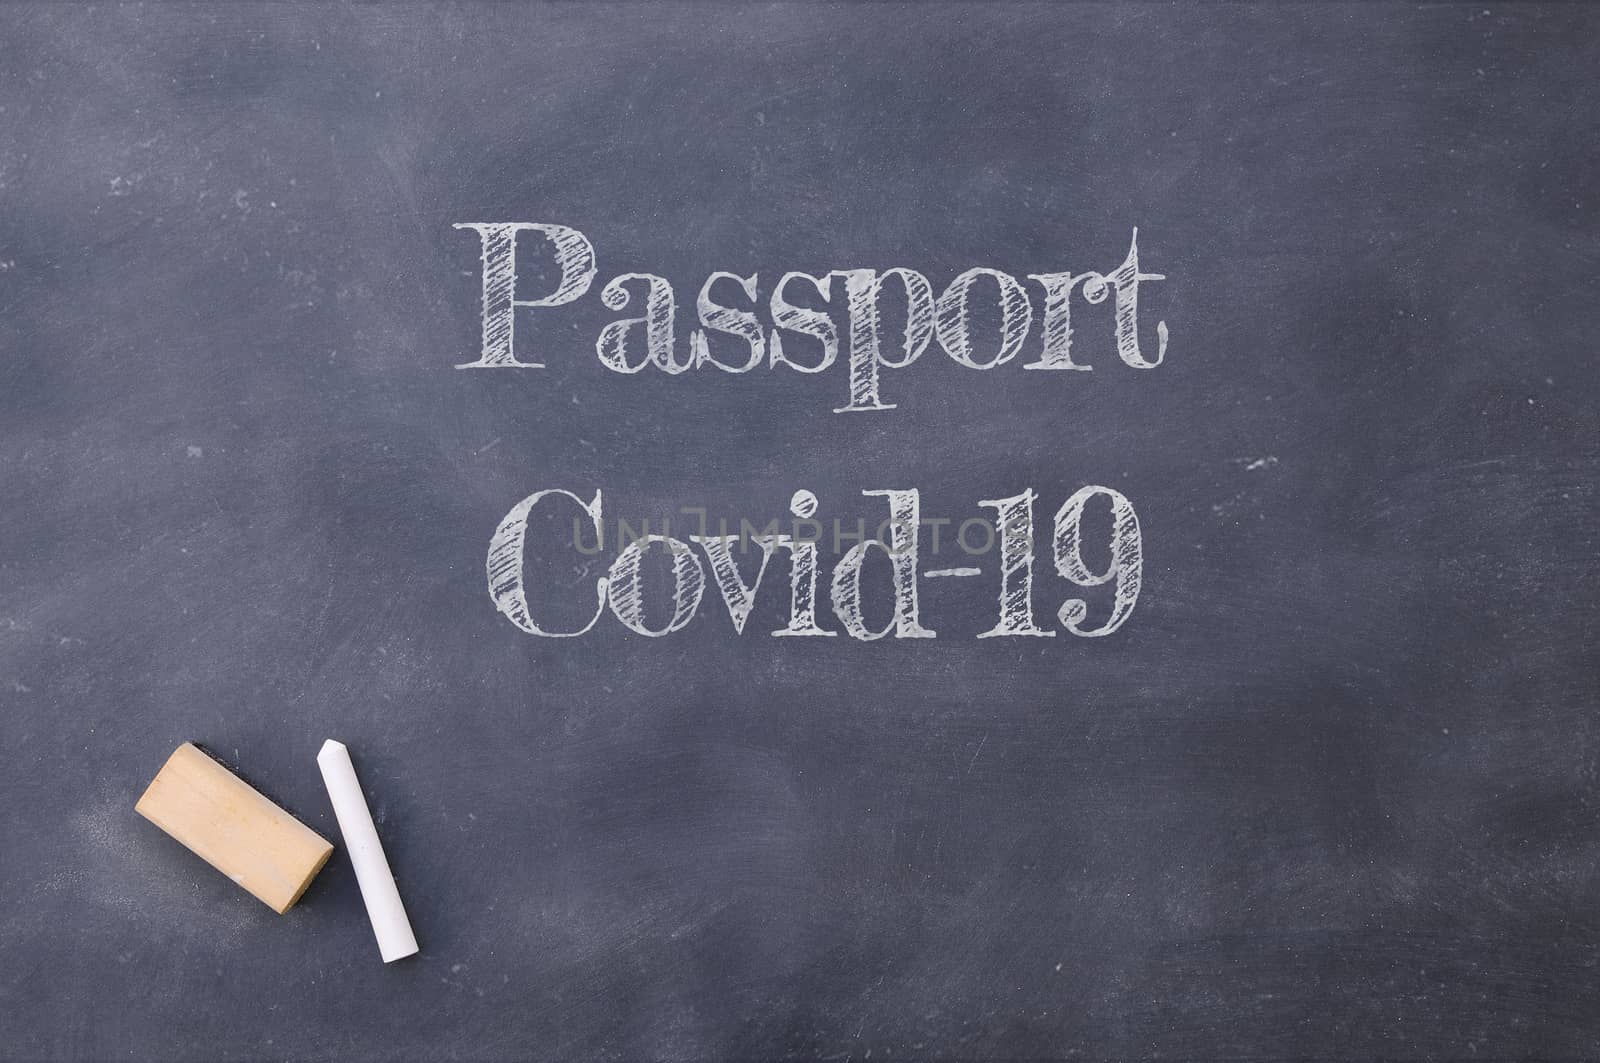 Passport Covid-19 written on a school blackboard.